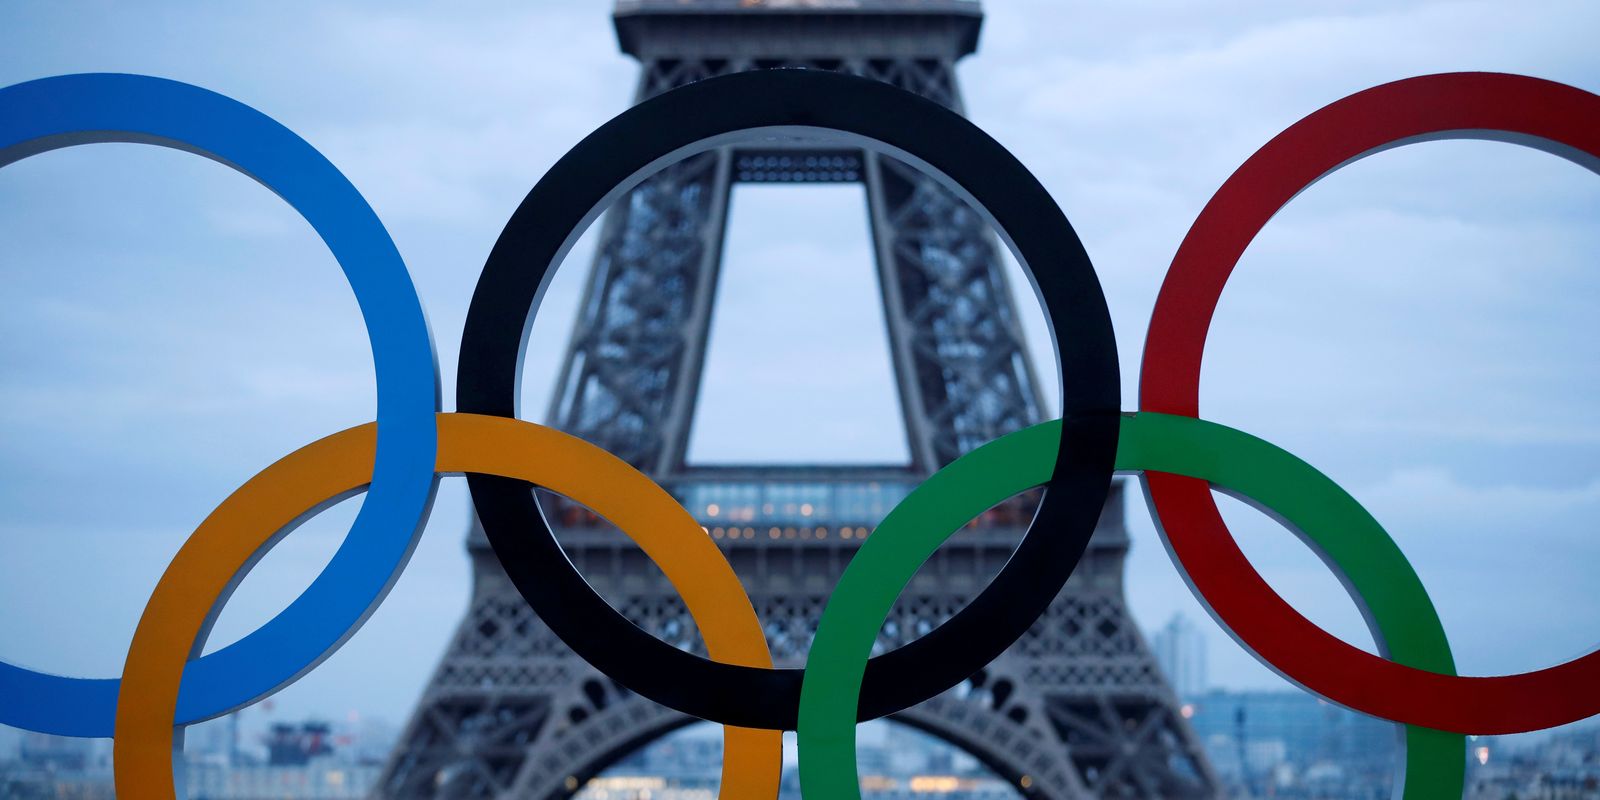 Anéis olímpicos na Praça Trocadero em frente à Torre Eiffel, em Paris